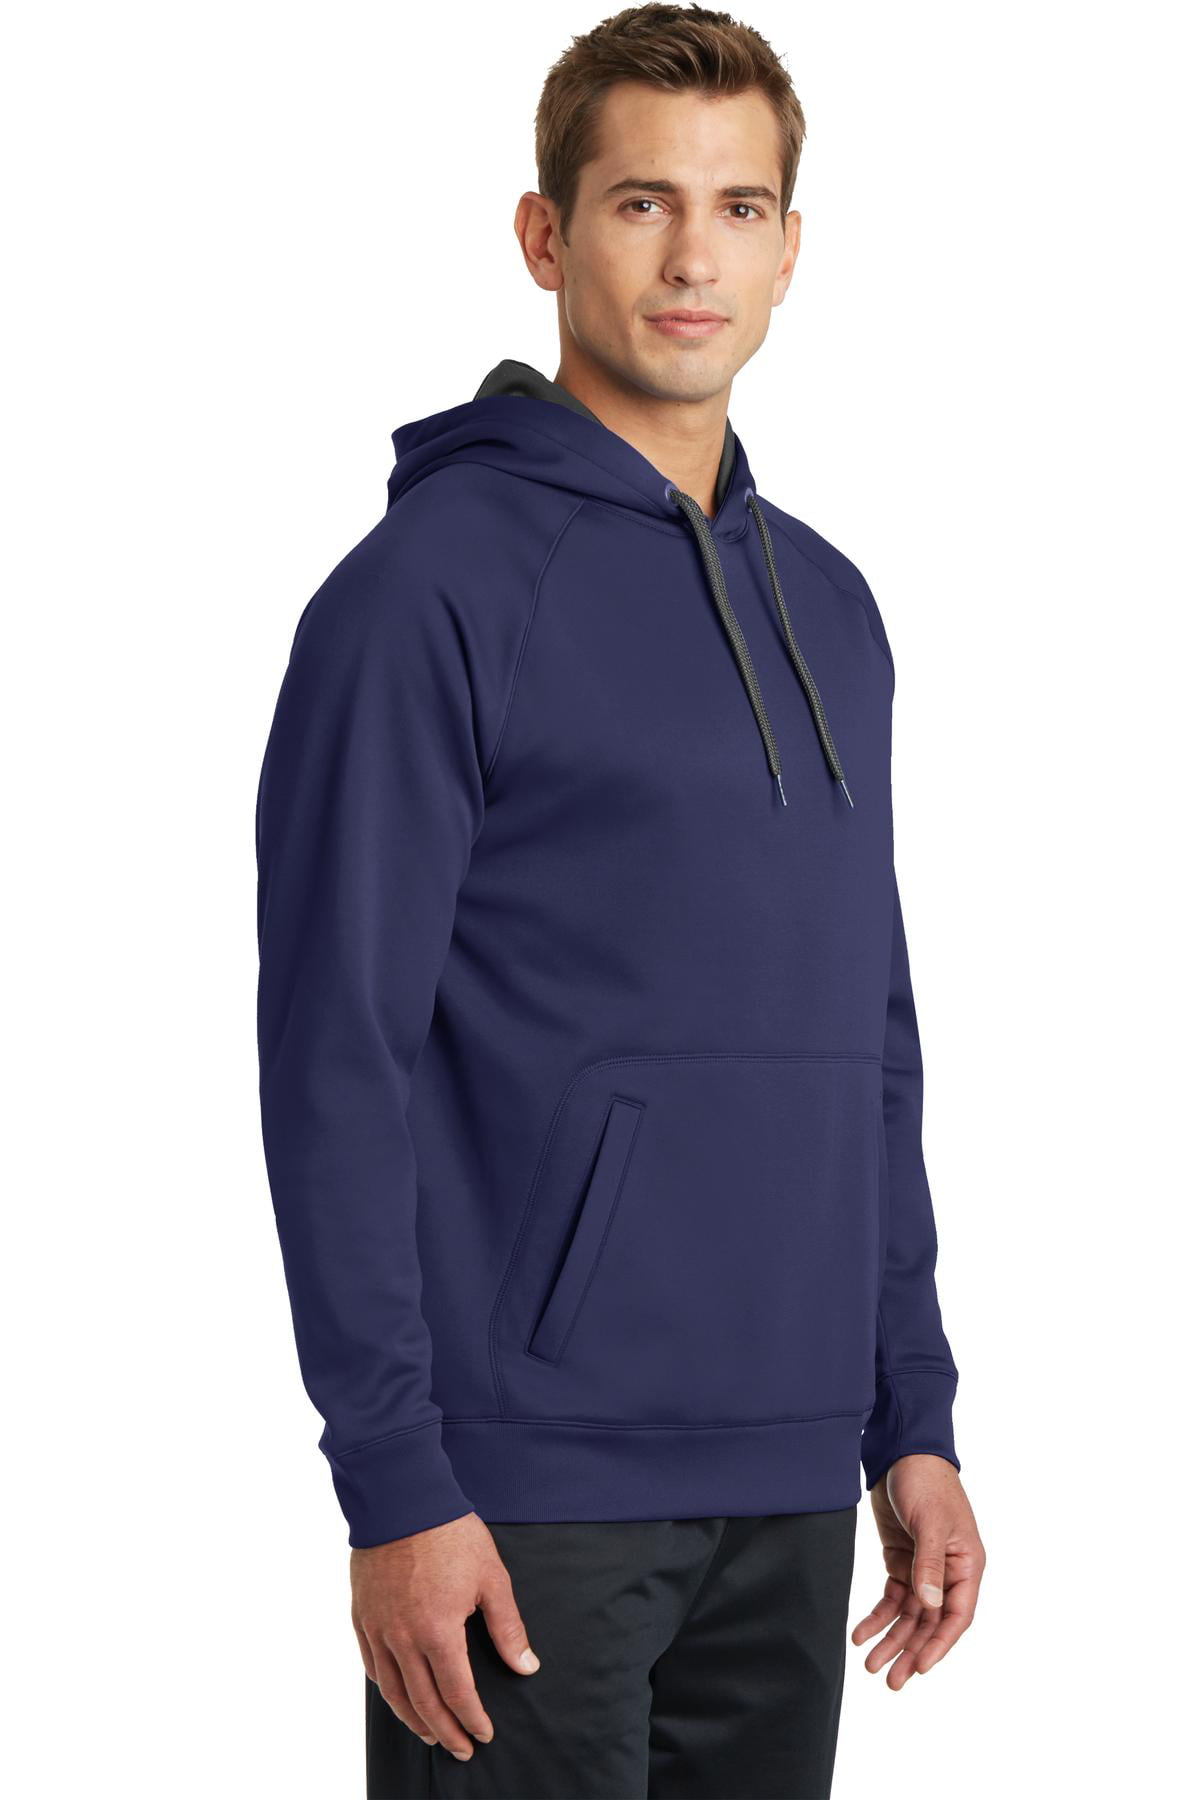 Sport-Tek Mens Tech Fleece Hooded Sweatshirt